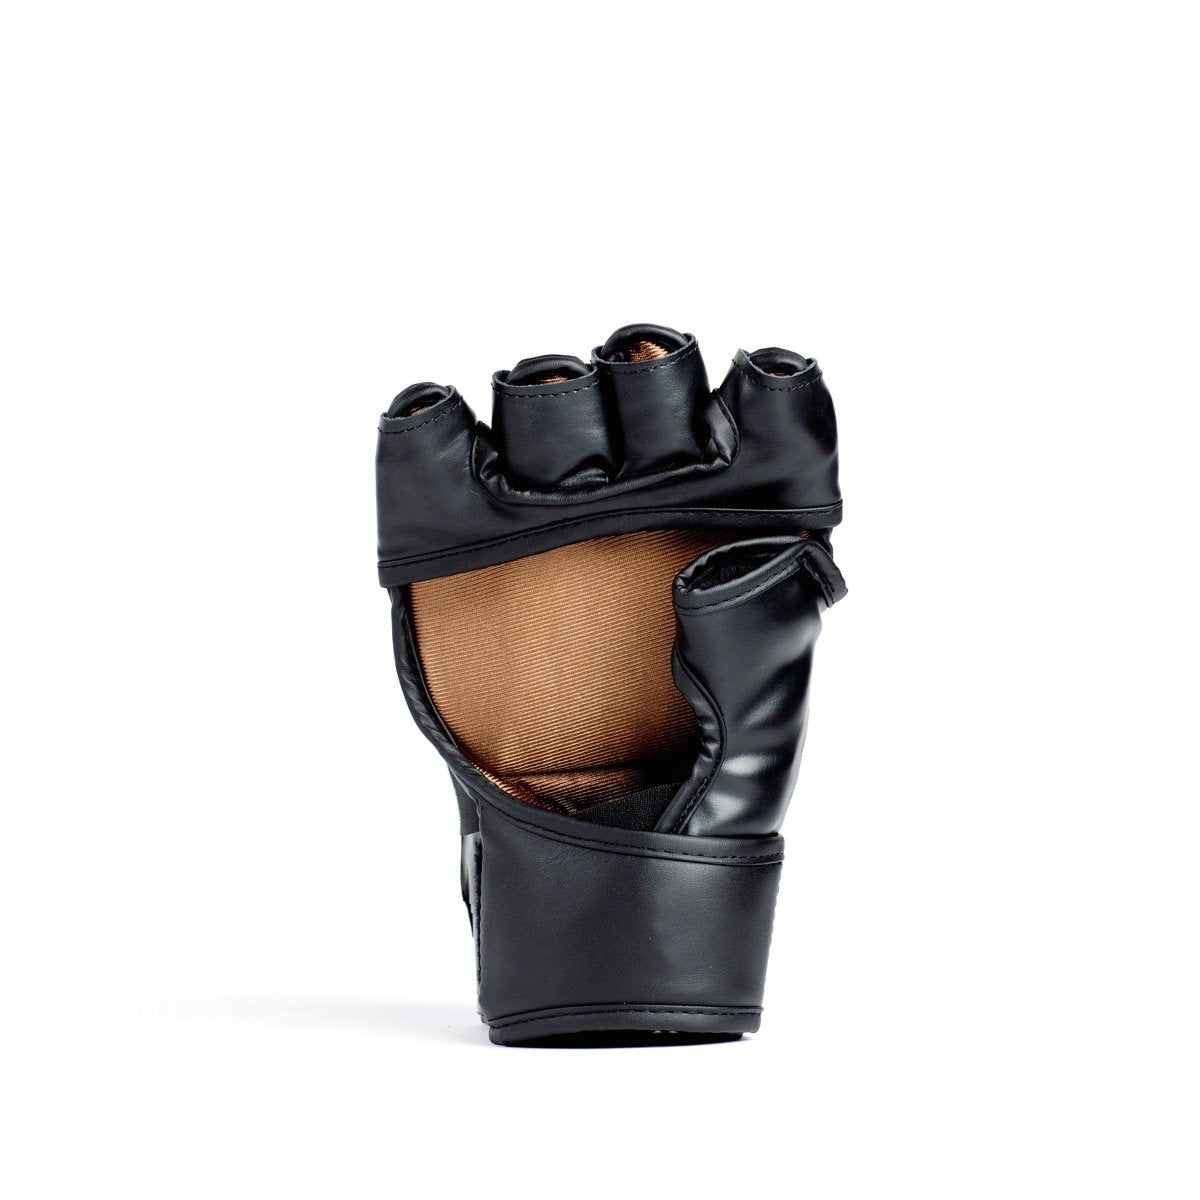 Titan MMA Glove - Everlast